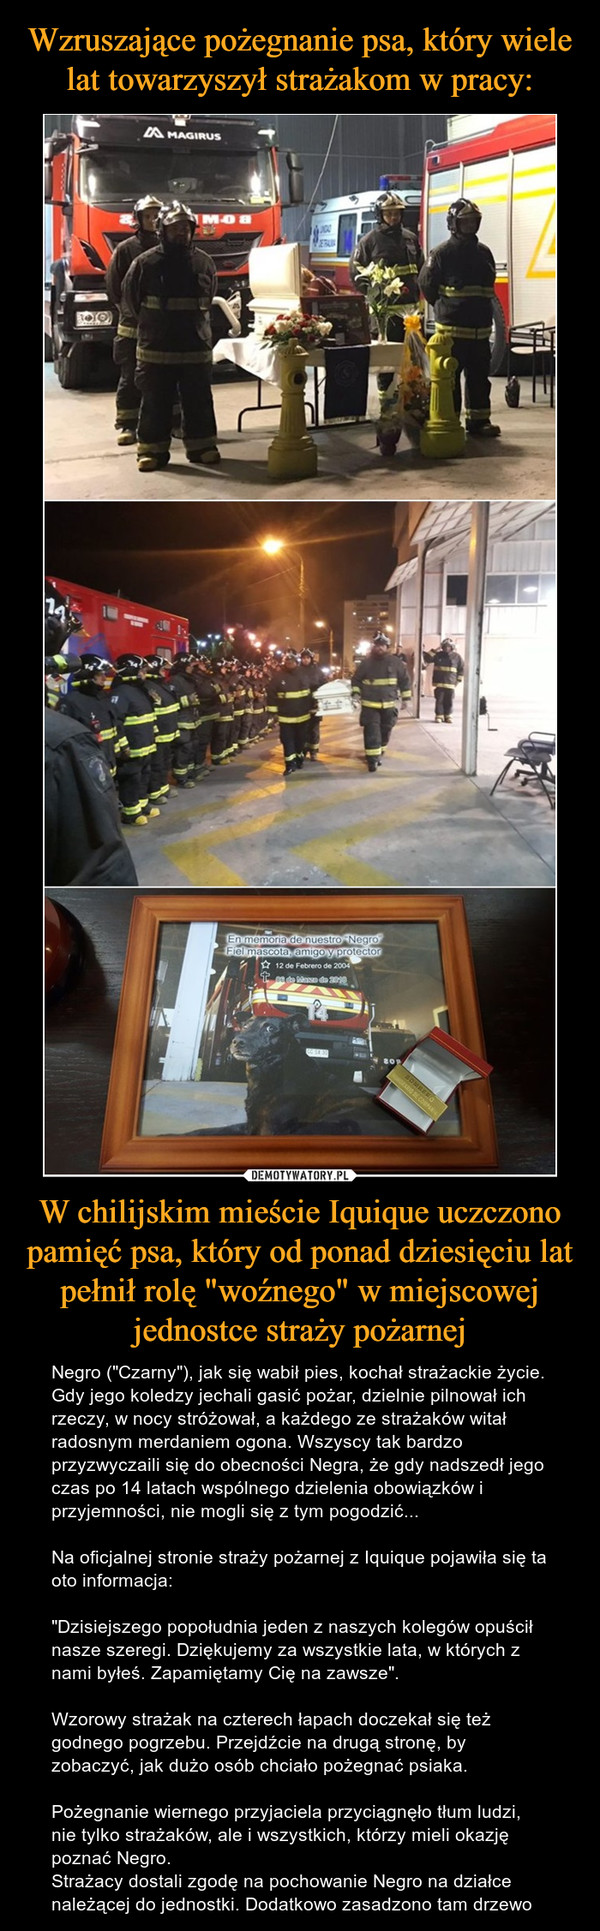 W chilijskim mieście Iquique uczczono pamięć psa, który od ponad dziesięciu lat pełnił rolę "woźnego" w miejscowej jednostce straży pożarnej – Negro ("Czarny"), jak się wabił pies, kochał strażackie życie. Gdy jego koledzy jechali gasić pożar, dzielnie pilnował ich rzeczy, w nocy stróżował, a każdego ze strażaków witał radosnym merdaniem ogona. Wszyscy tak bardzo przyzwyczaili się do obecności Negra, że gdy nadszedł jego czas po 14 latach wspólnego dzielenia obowiązków i przyjemności, nie mogli się z tym pogodzić...Na oficjalnej stronie straży pożarnej z Iquique pojawiła się ta oto informacja: "Dzisiejszego popołudnia jeden z naszych kolegów opuścił nasze szeregi. Dziękujemy za wszystkie lata, w których z nami byłeś. Zapamiętamy Cię na zawsze". Wzorowy strażak na czterech łapach doczekał się też godnego pogrzebu. Przejdźcie na drugą stronę, by zobaczyć, jak dużo osób chciało pożegnać psiaka.Pożegnanie wiernego przyjaciela przyciągnęło tłum ludzi, nie tylko strażaków, ale i wszystkich, którzy mieli okazję poznać Negro.Strażacy dostali zgodę na pochowanie Negro na działce należącej do jednostki. Dodatkowo zasadzono tam drzewo 